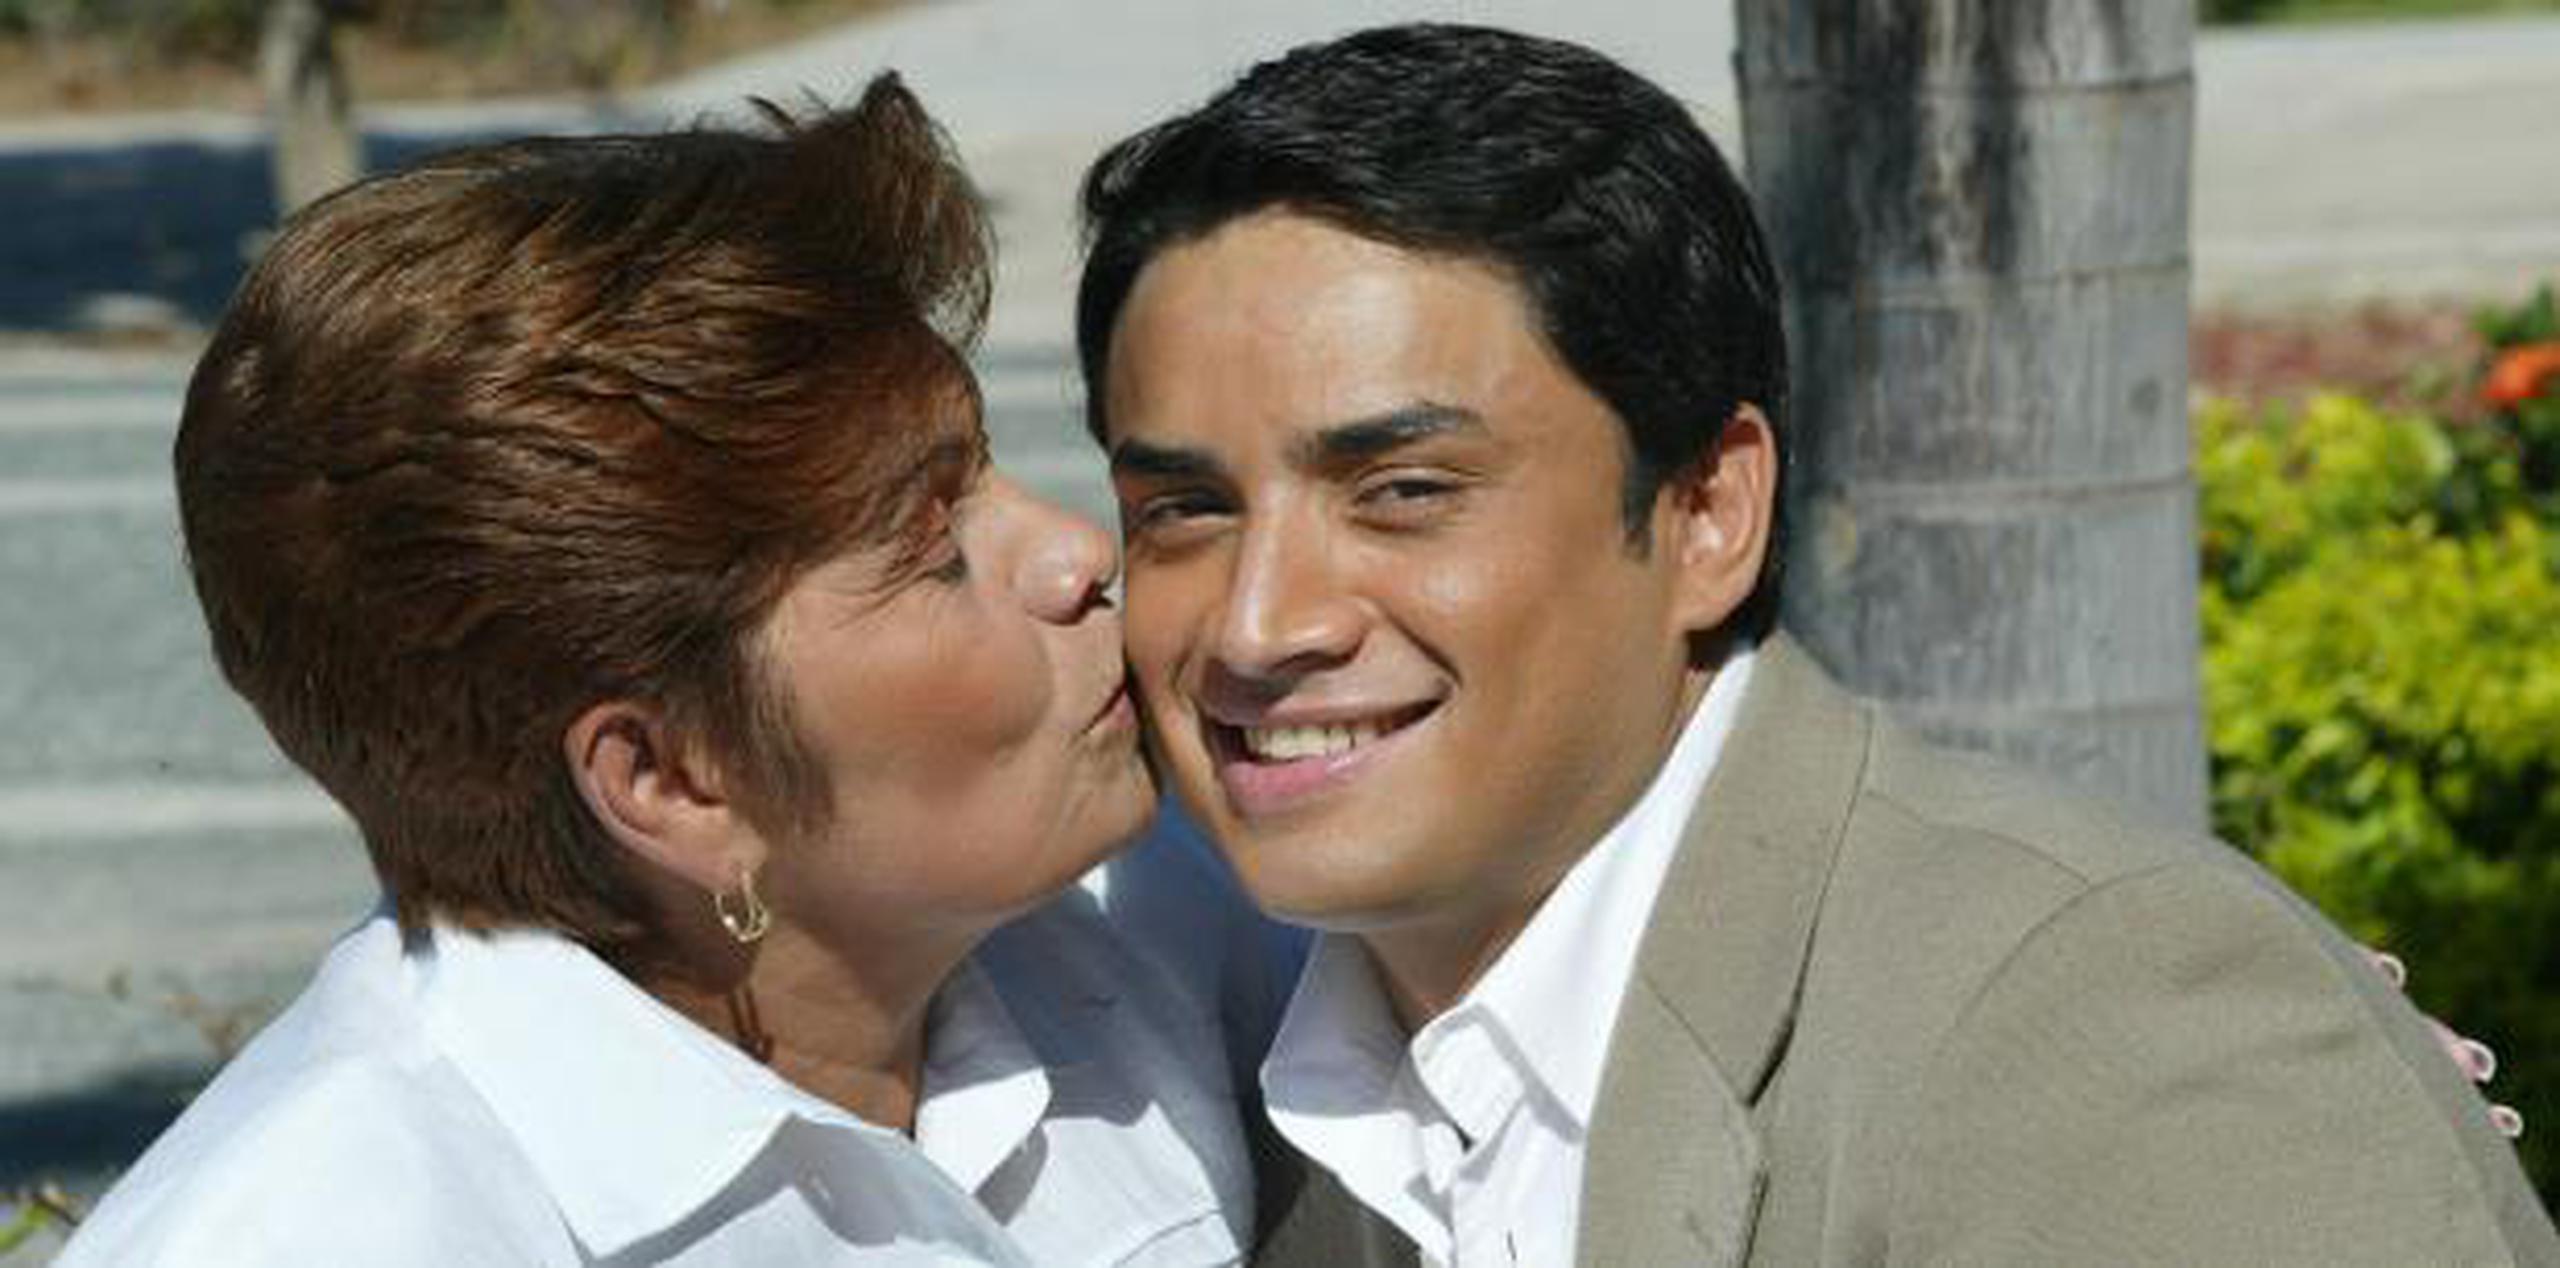 Manny Manuel junto con su progenitora, Lucy Santiago, frente al Coliseo Roberto Clemente en San Juan, el 11 de febrero de 2004. (Archivo)